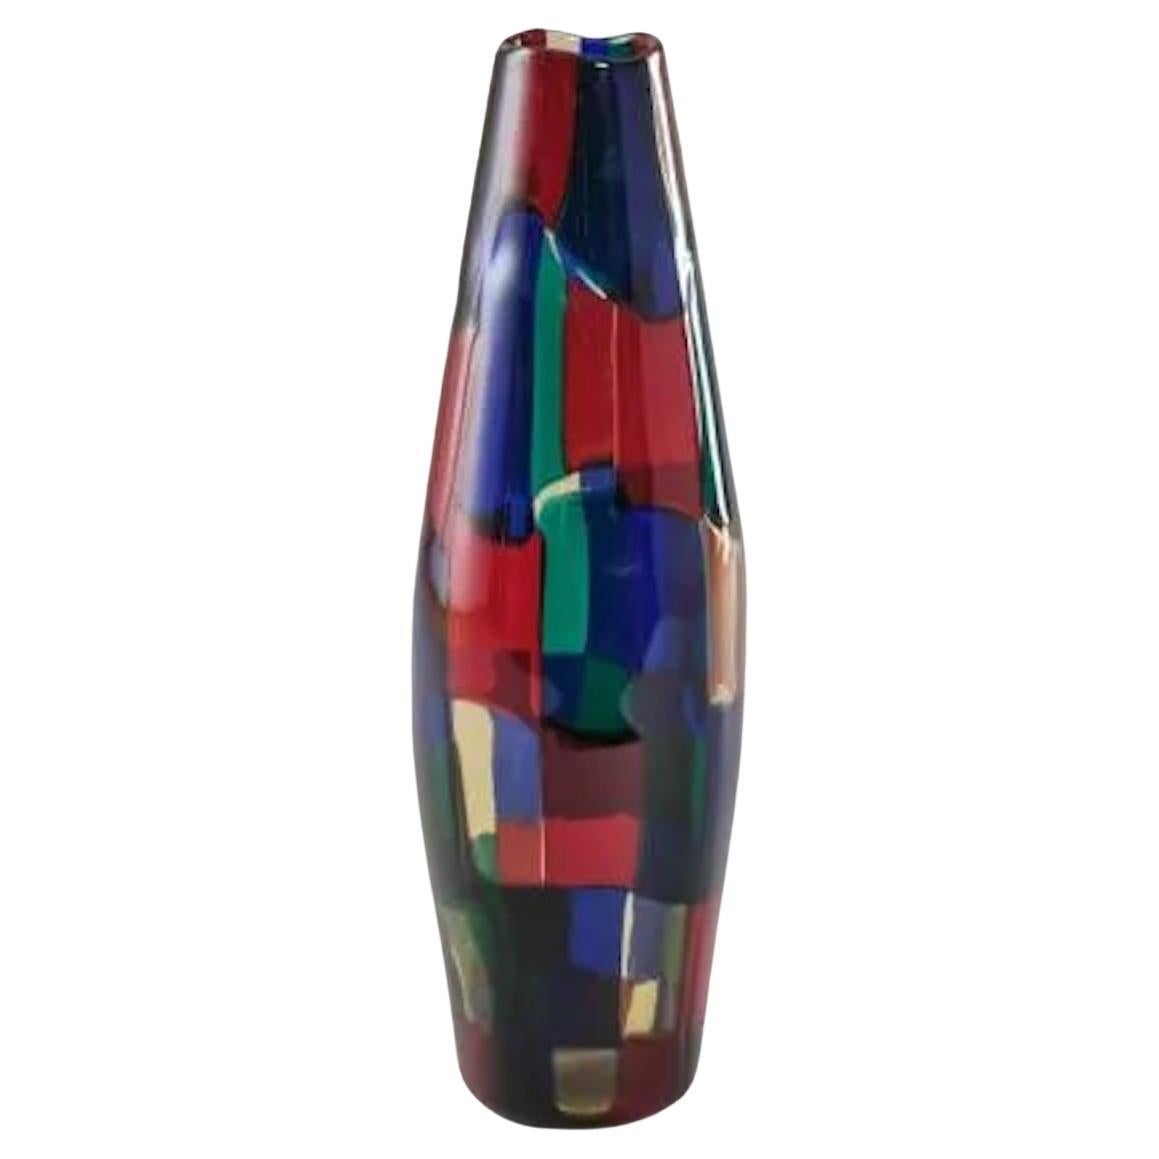 Seltene Vase "Pezzato" aus polychromem Murano-Glas von Fulvio Bianconi für Venini